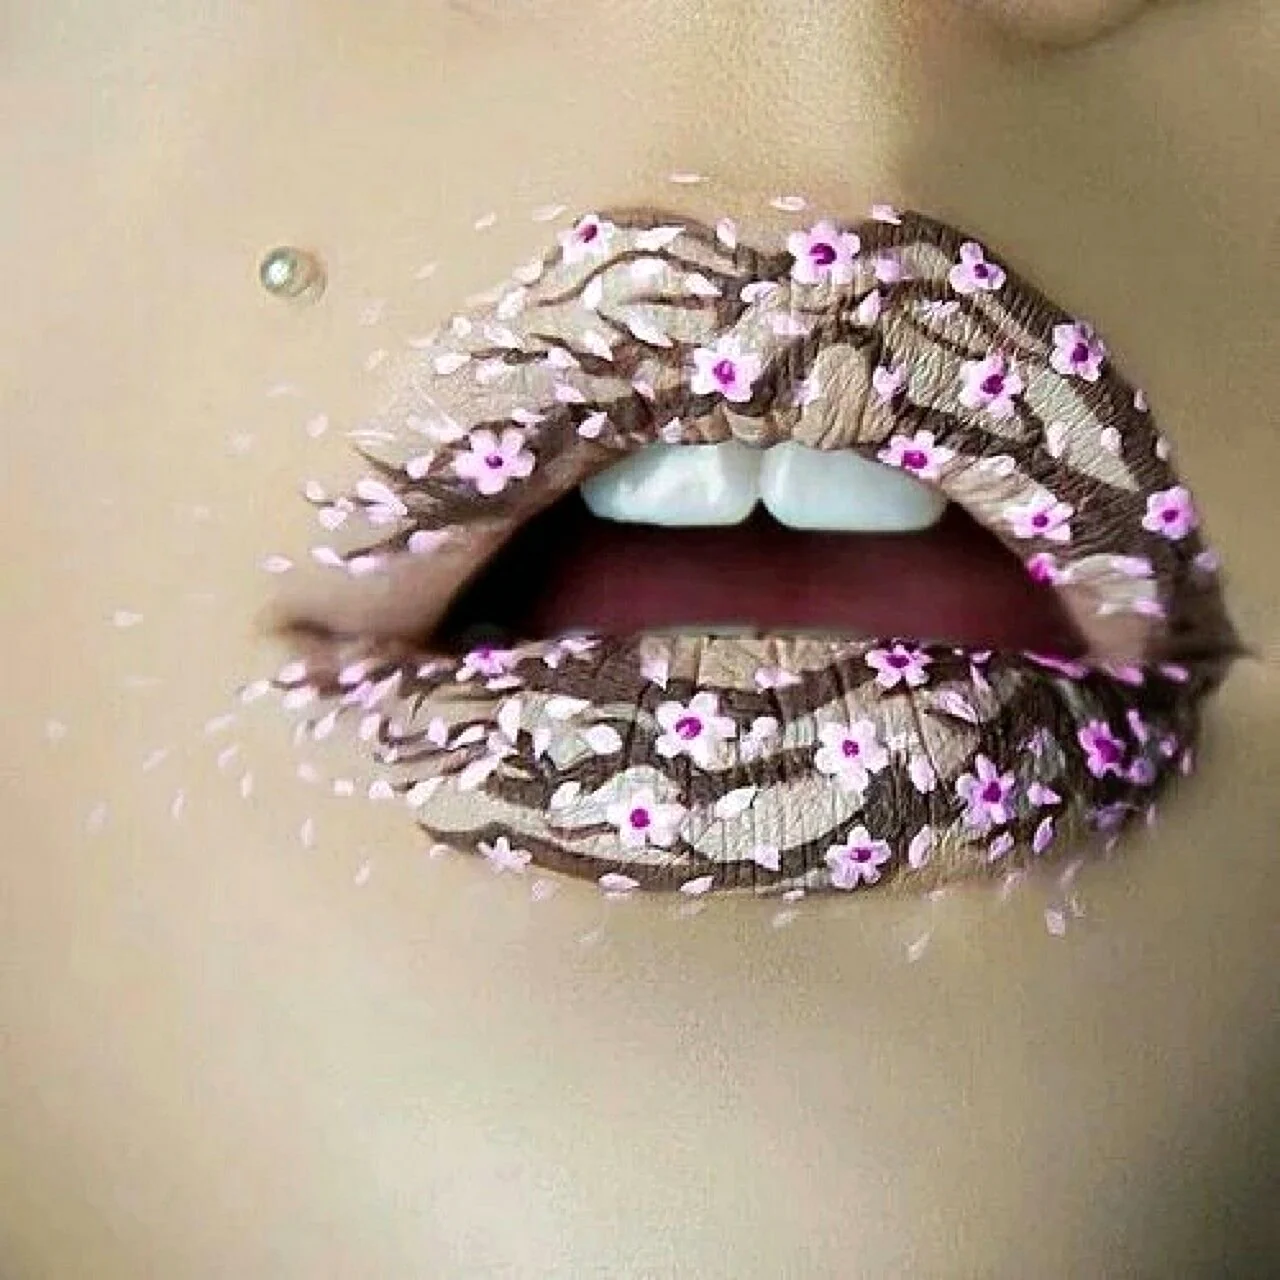 Креативный макияж губ